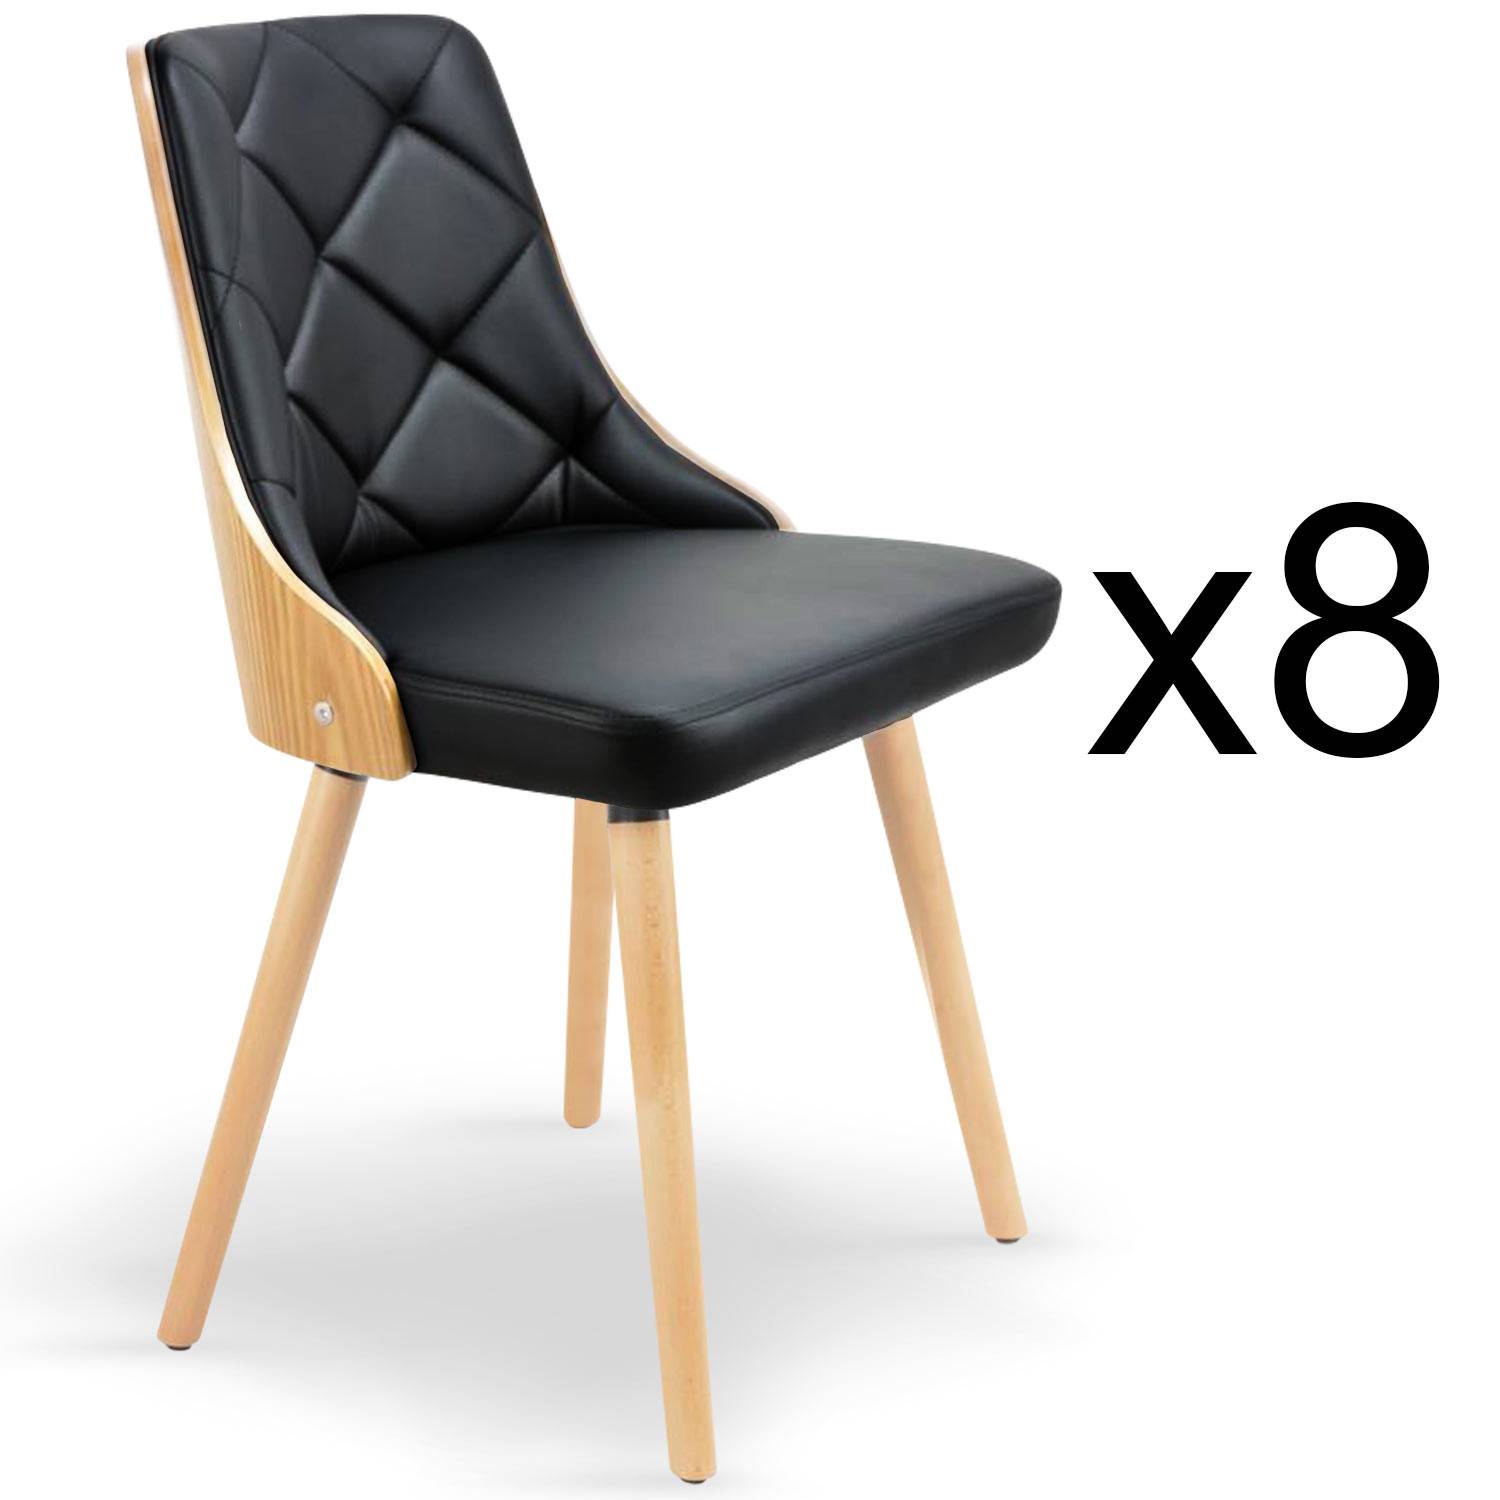 Lote de 8 sillas escandinavas Lalix en roble claro y negro